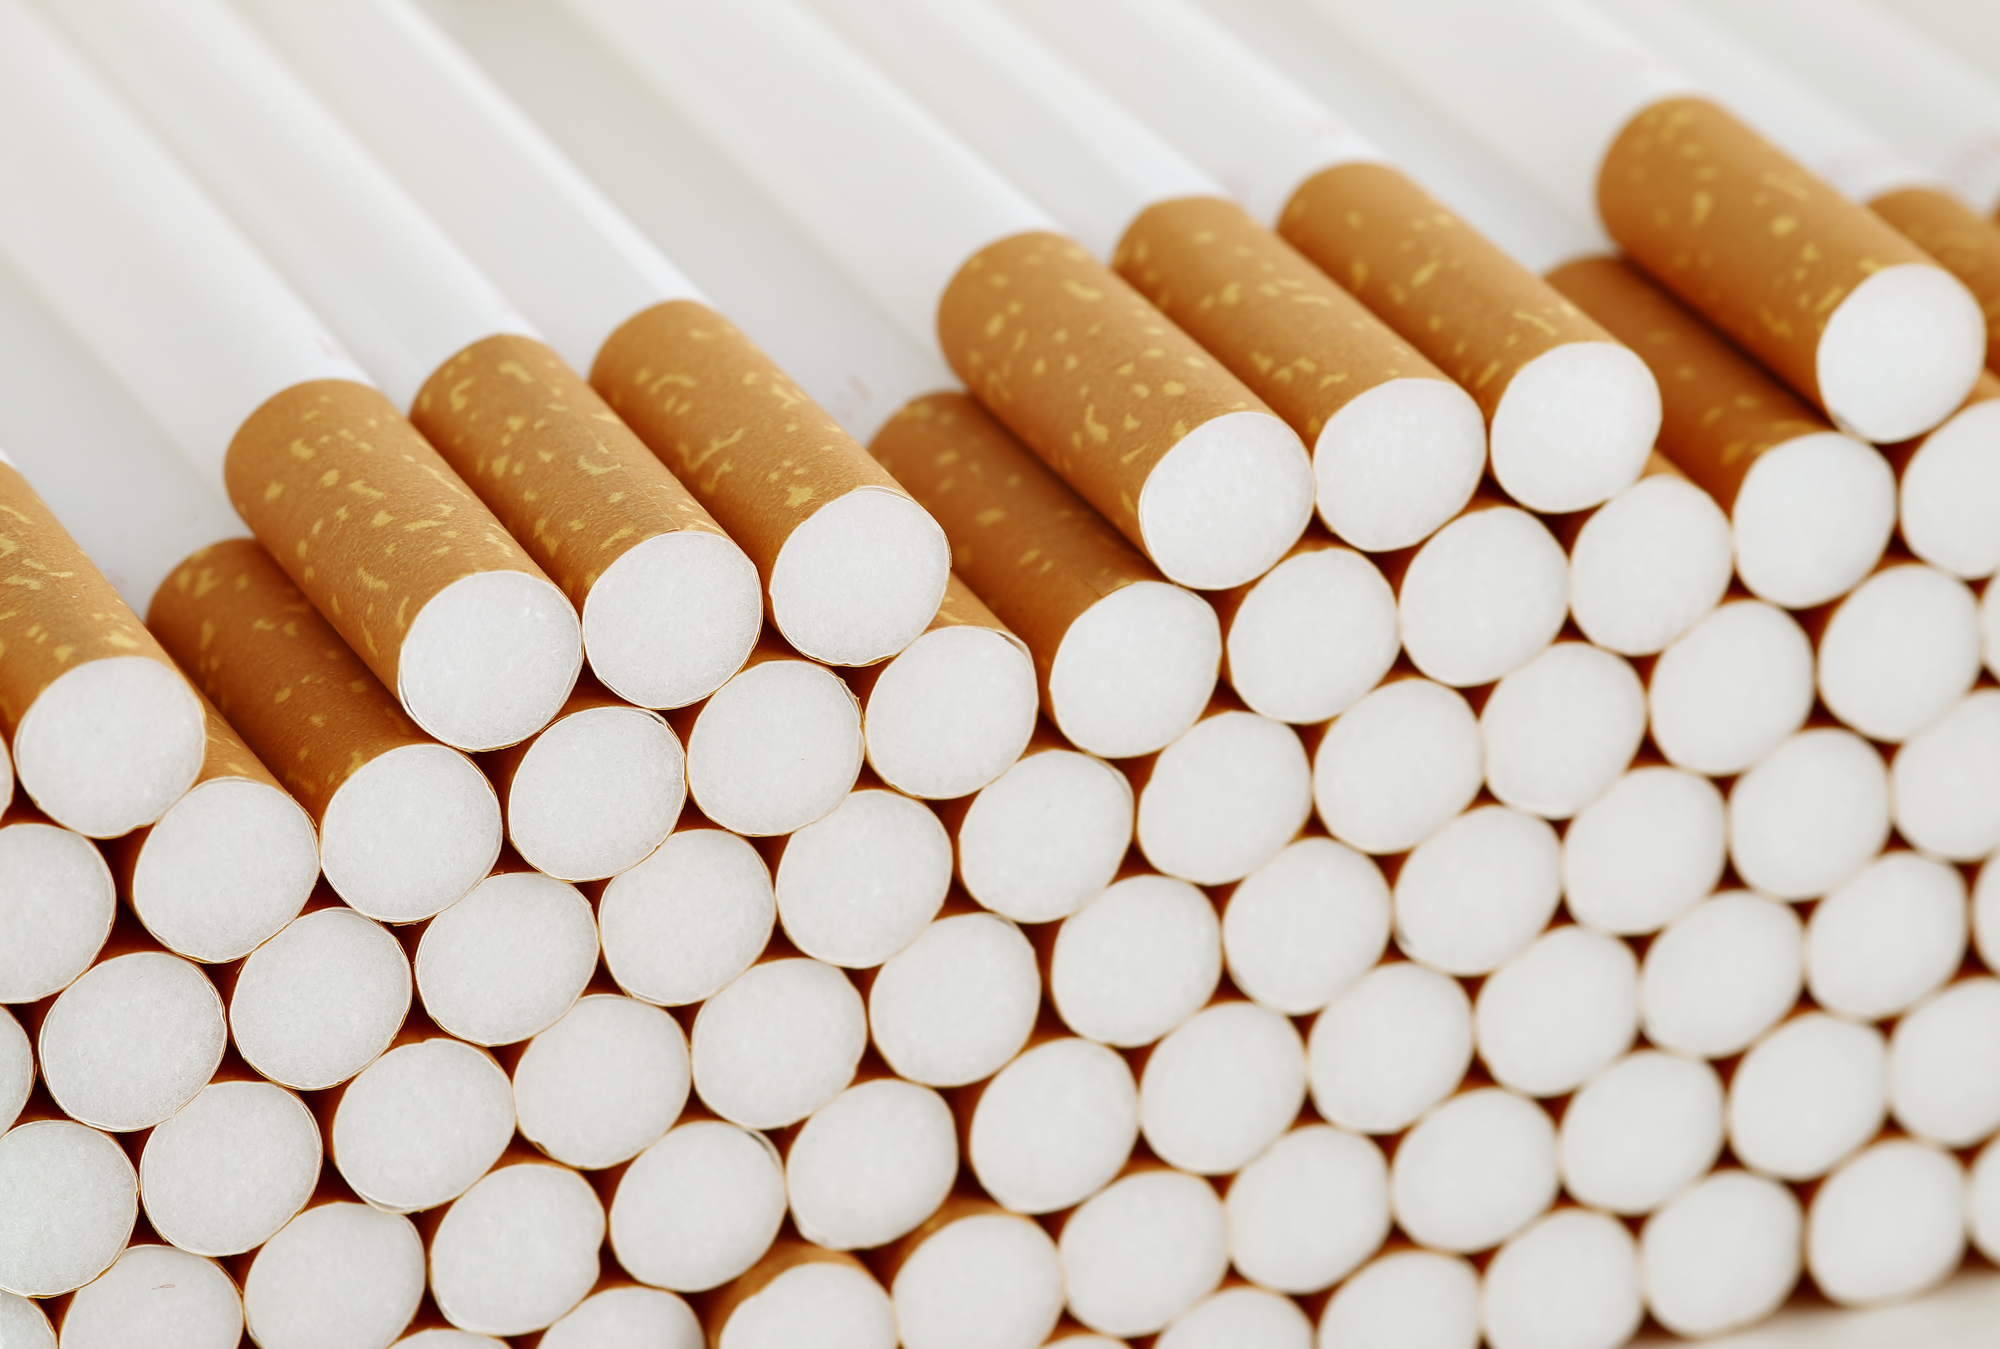 Több mint félmilliárd forint értékű csempészett cigarettát foglalt le a NAV